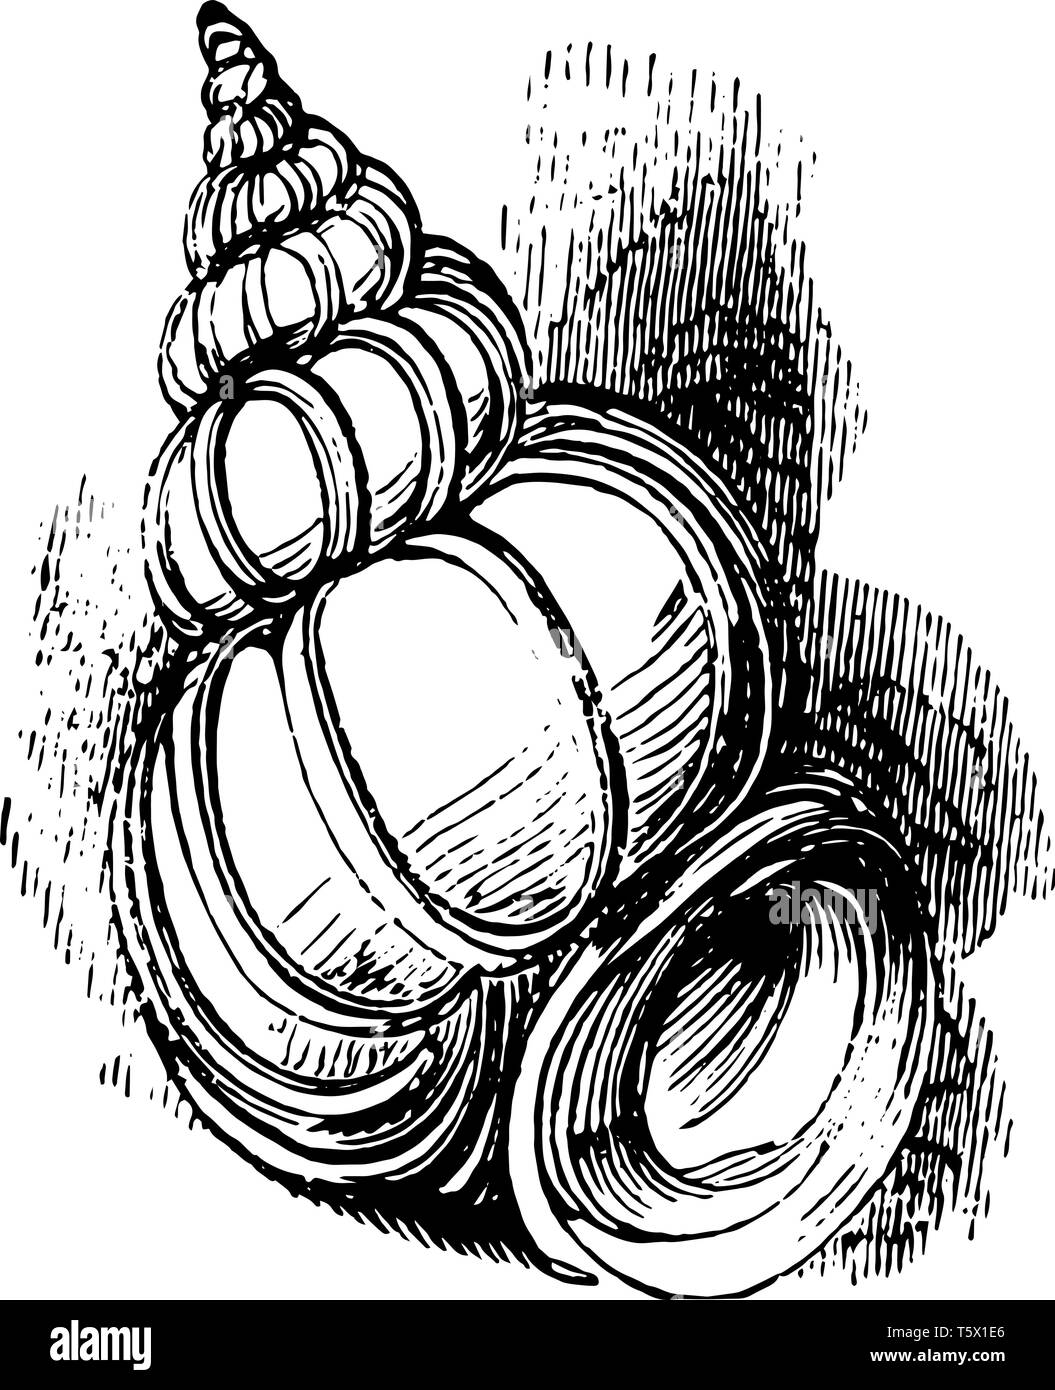 Wentletrap è un piccolo white spiralato mollusco gasteropode vintage disegno della linea di incisione o illustrazione. Illustrazione Vettoriale